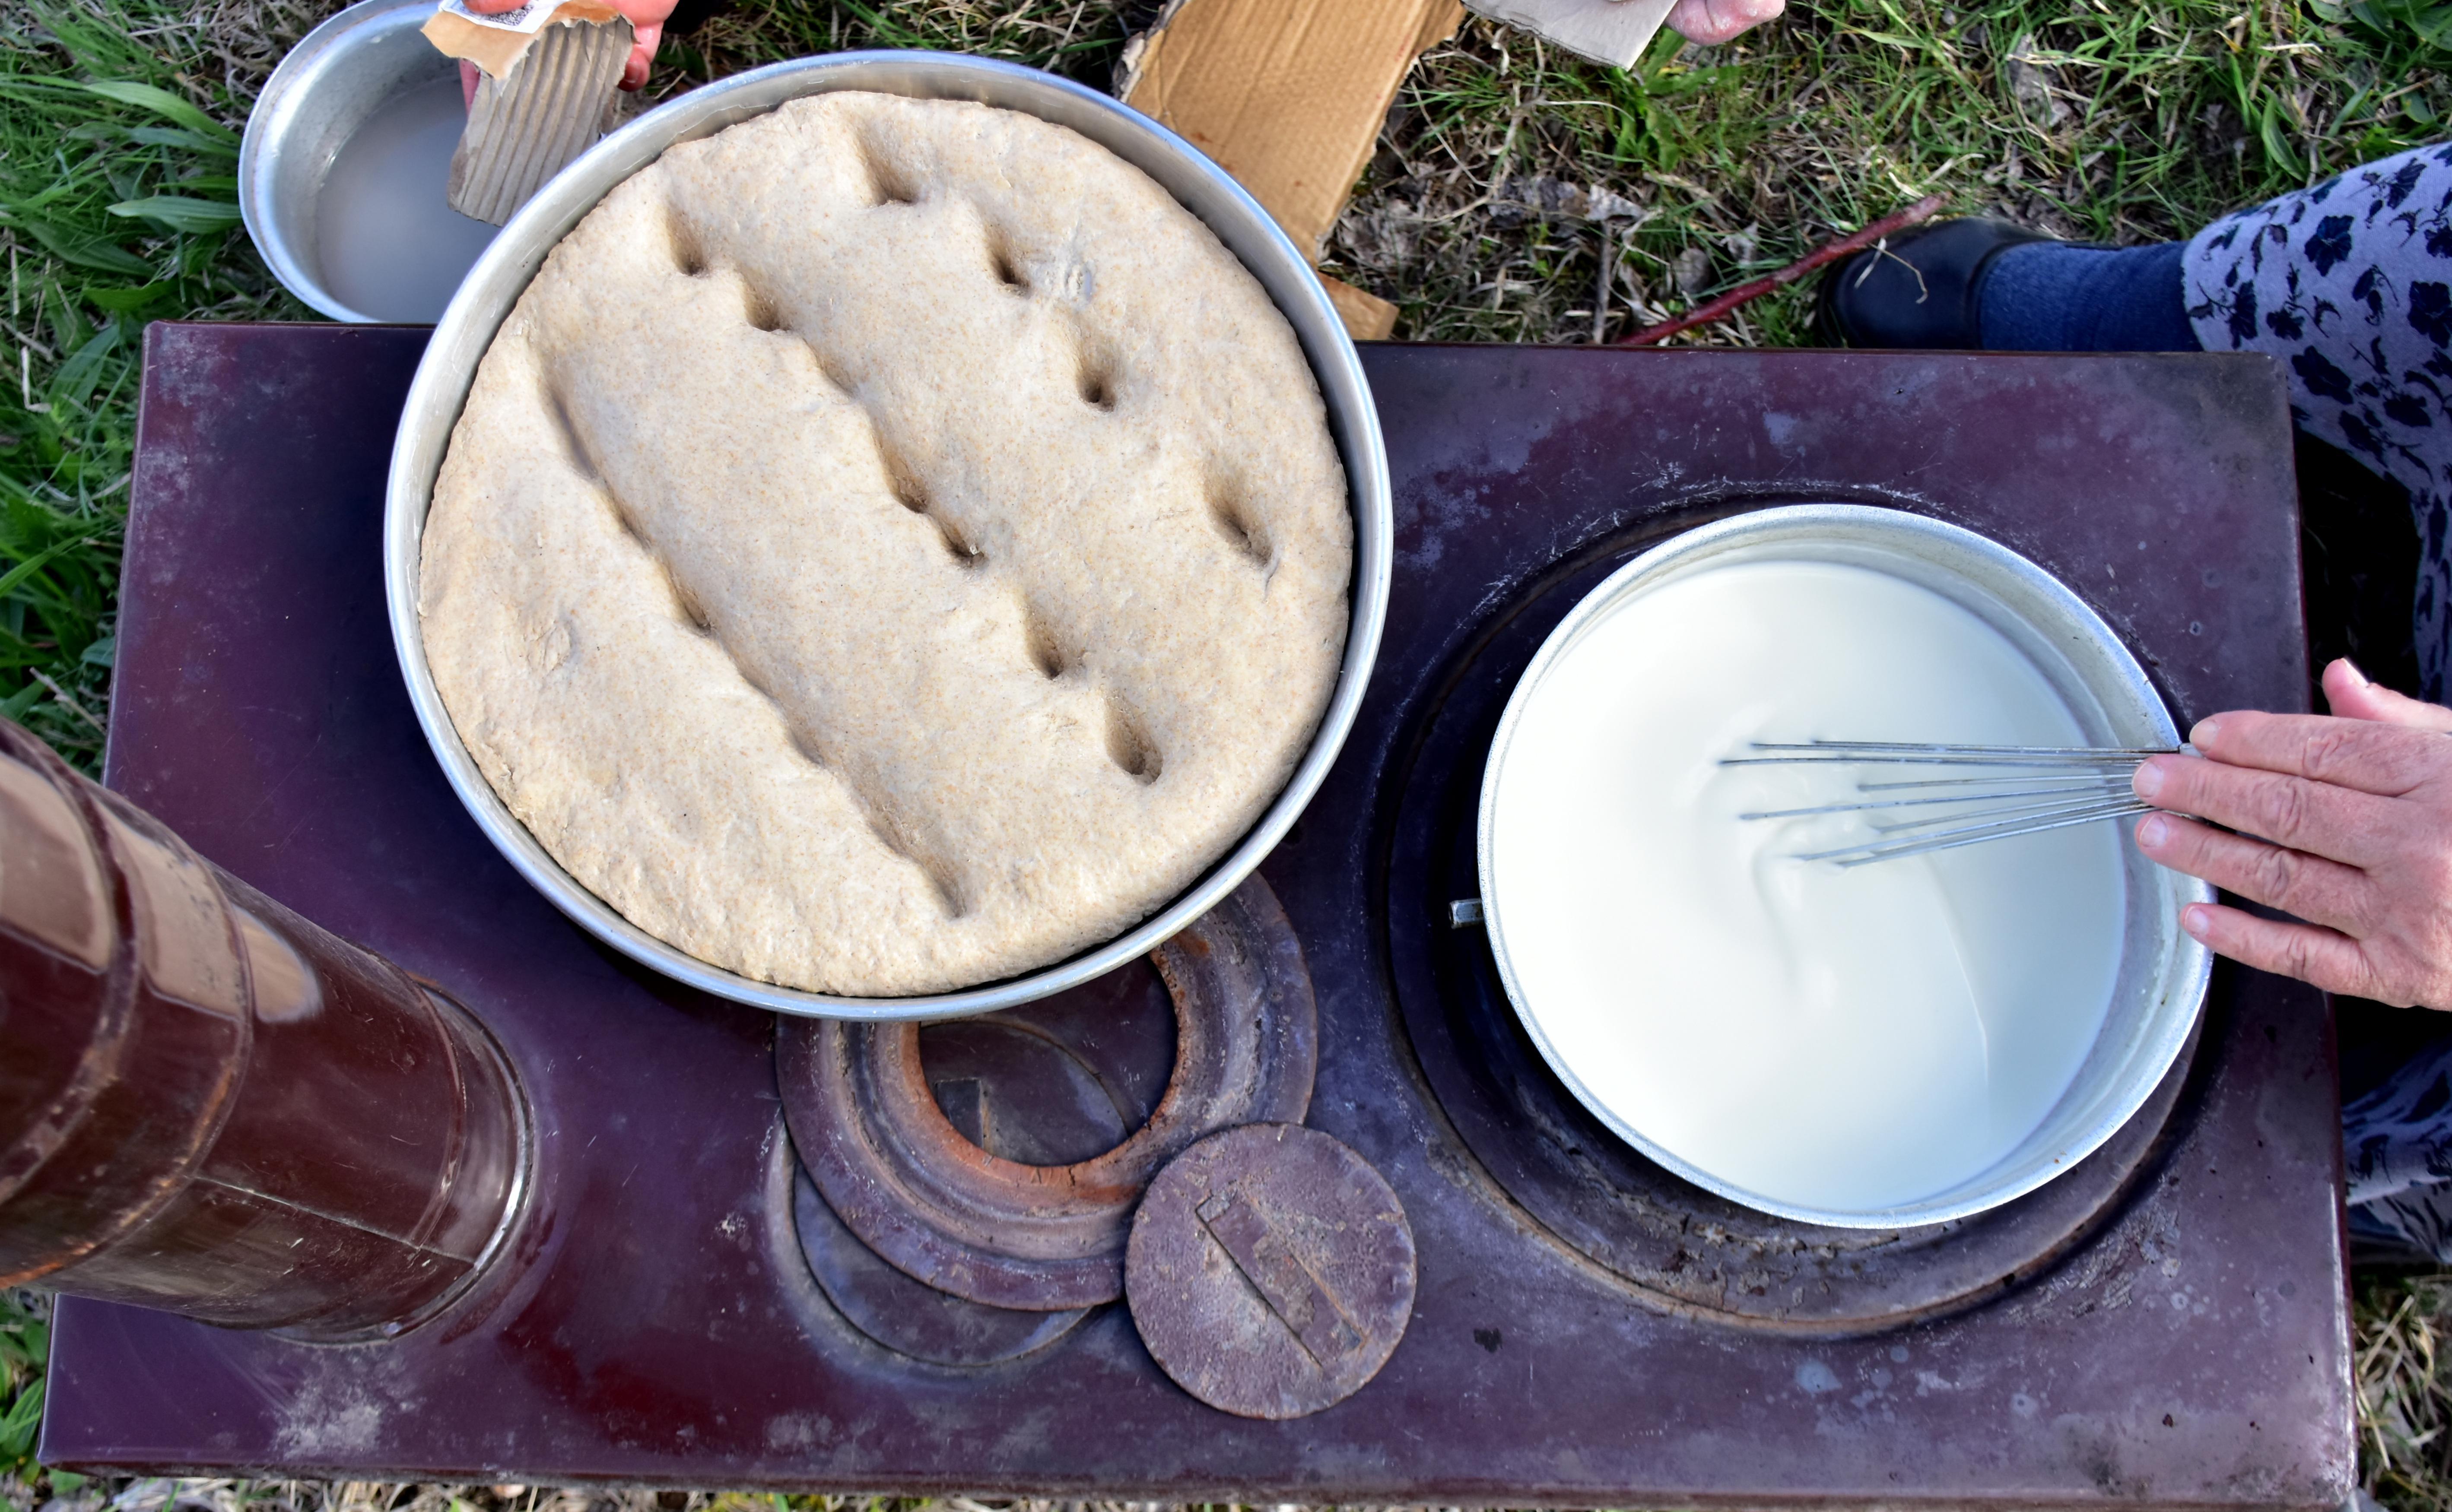 Bingölün asırlık lezzetleri keledoş ve mastuva iftar sofralarını süslüyor